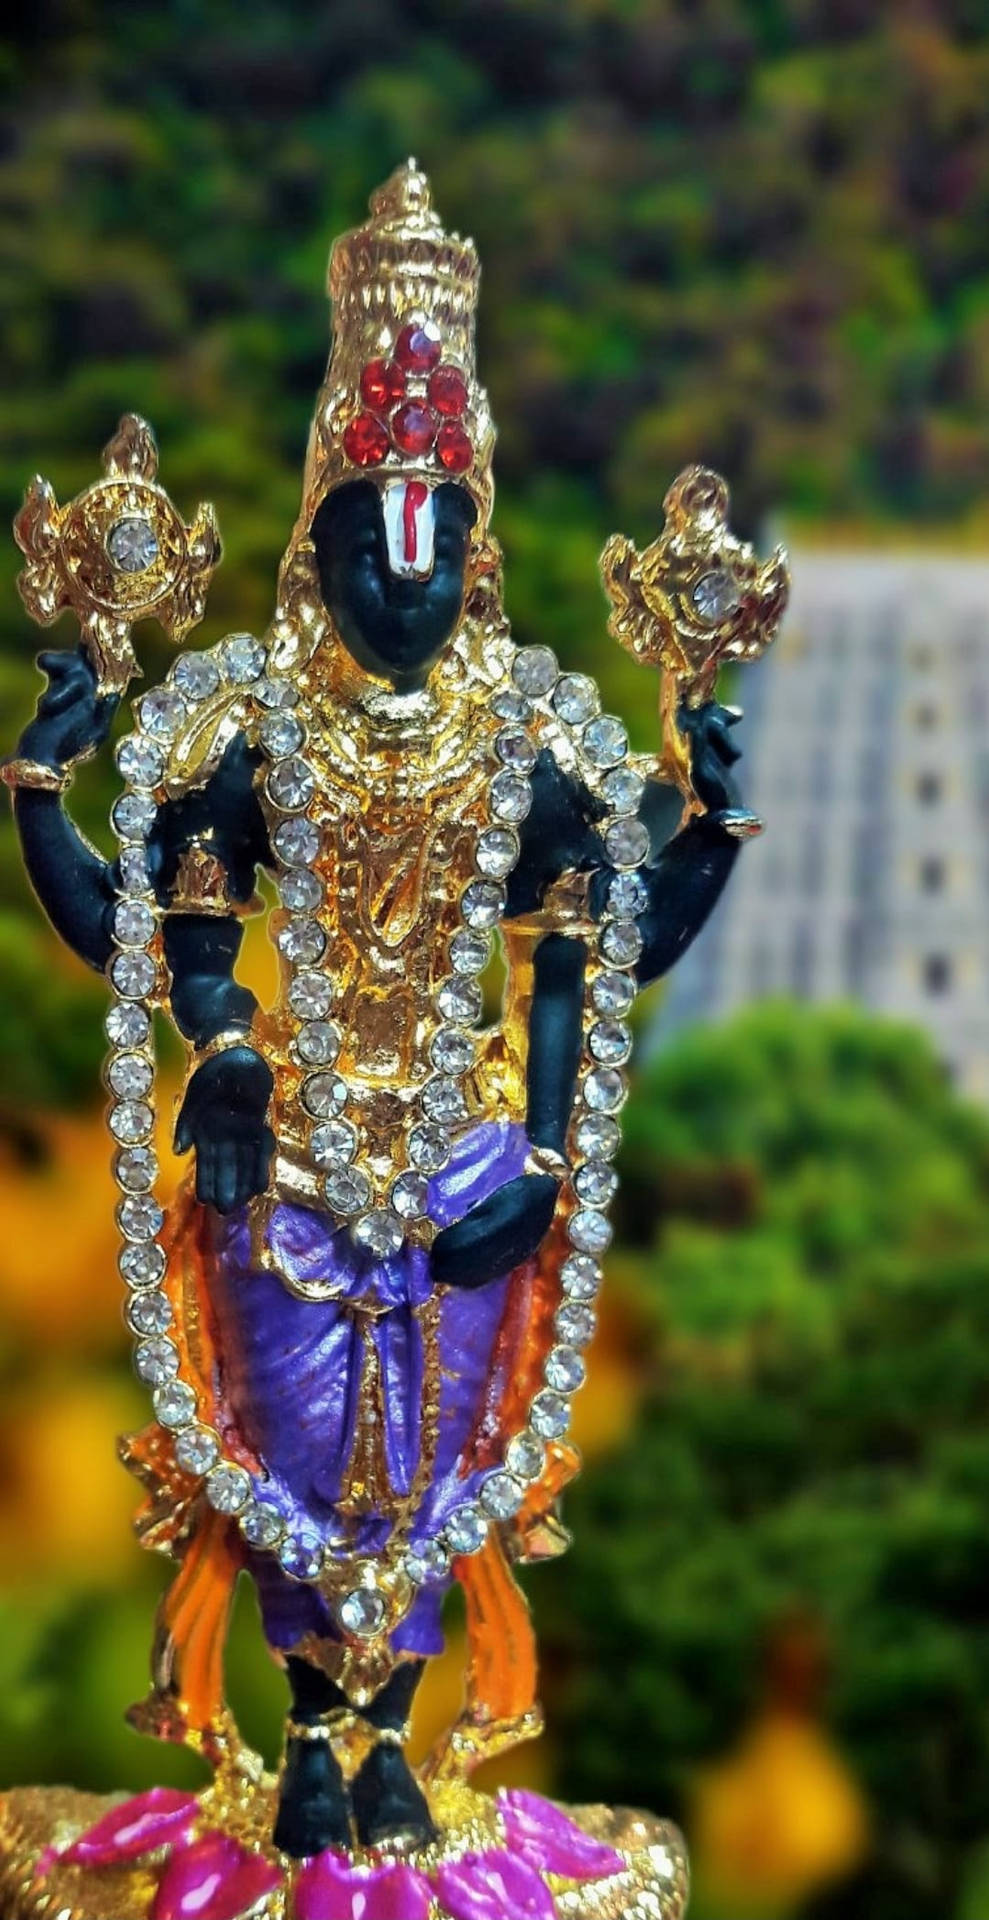 Venkateswaraswamy Religiös Figurin Skulle Vara En Vacker Dator- Eller Mobil Bakgrundsbild. Wallpaper